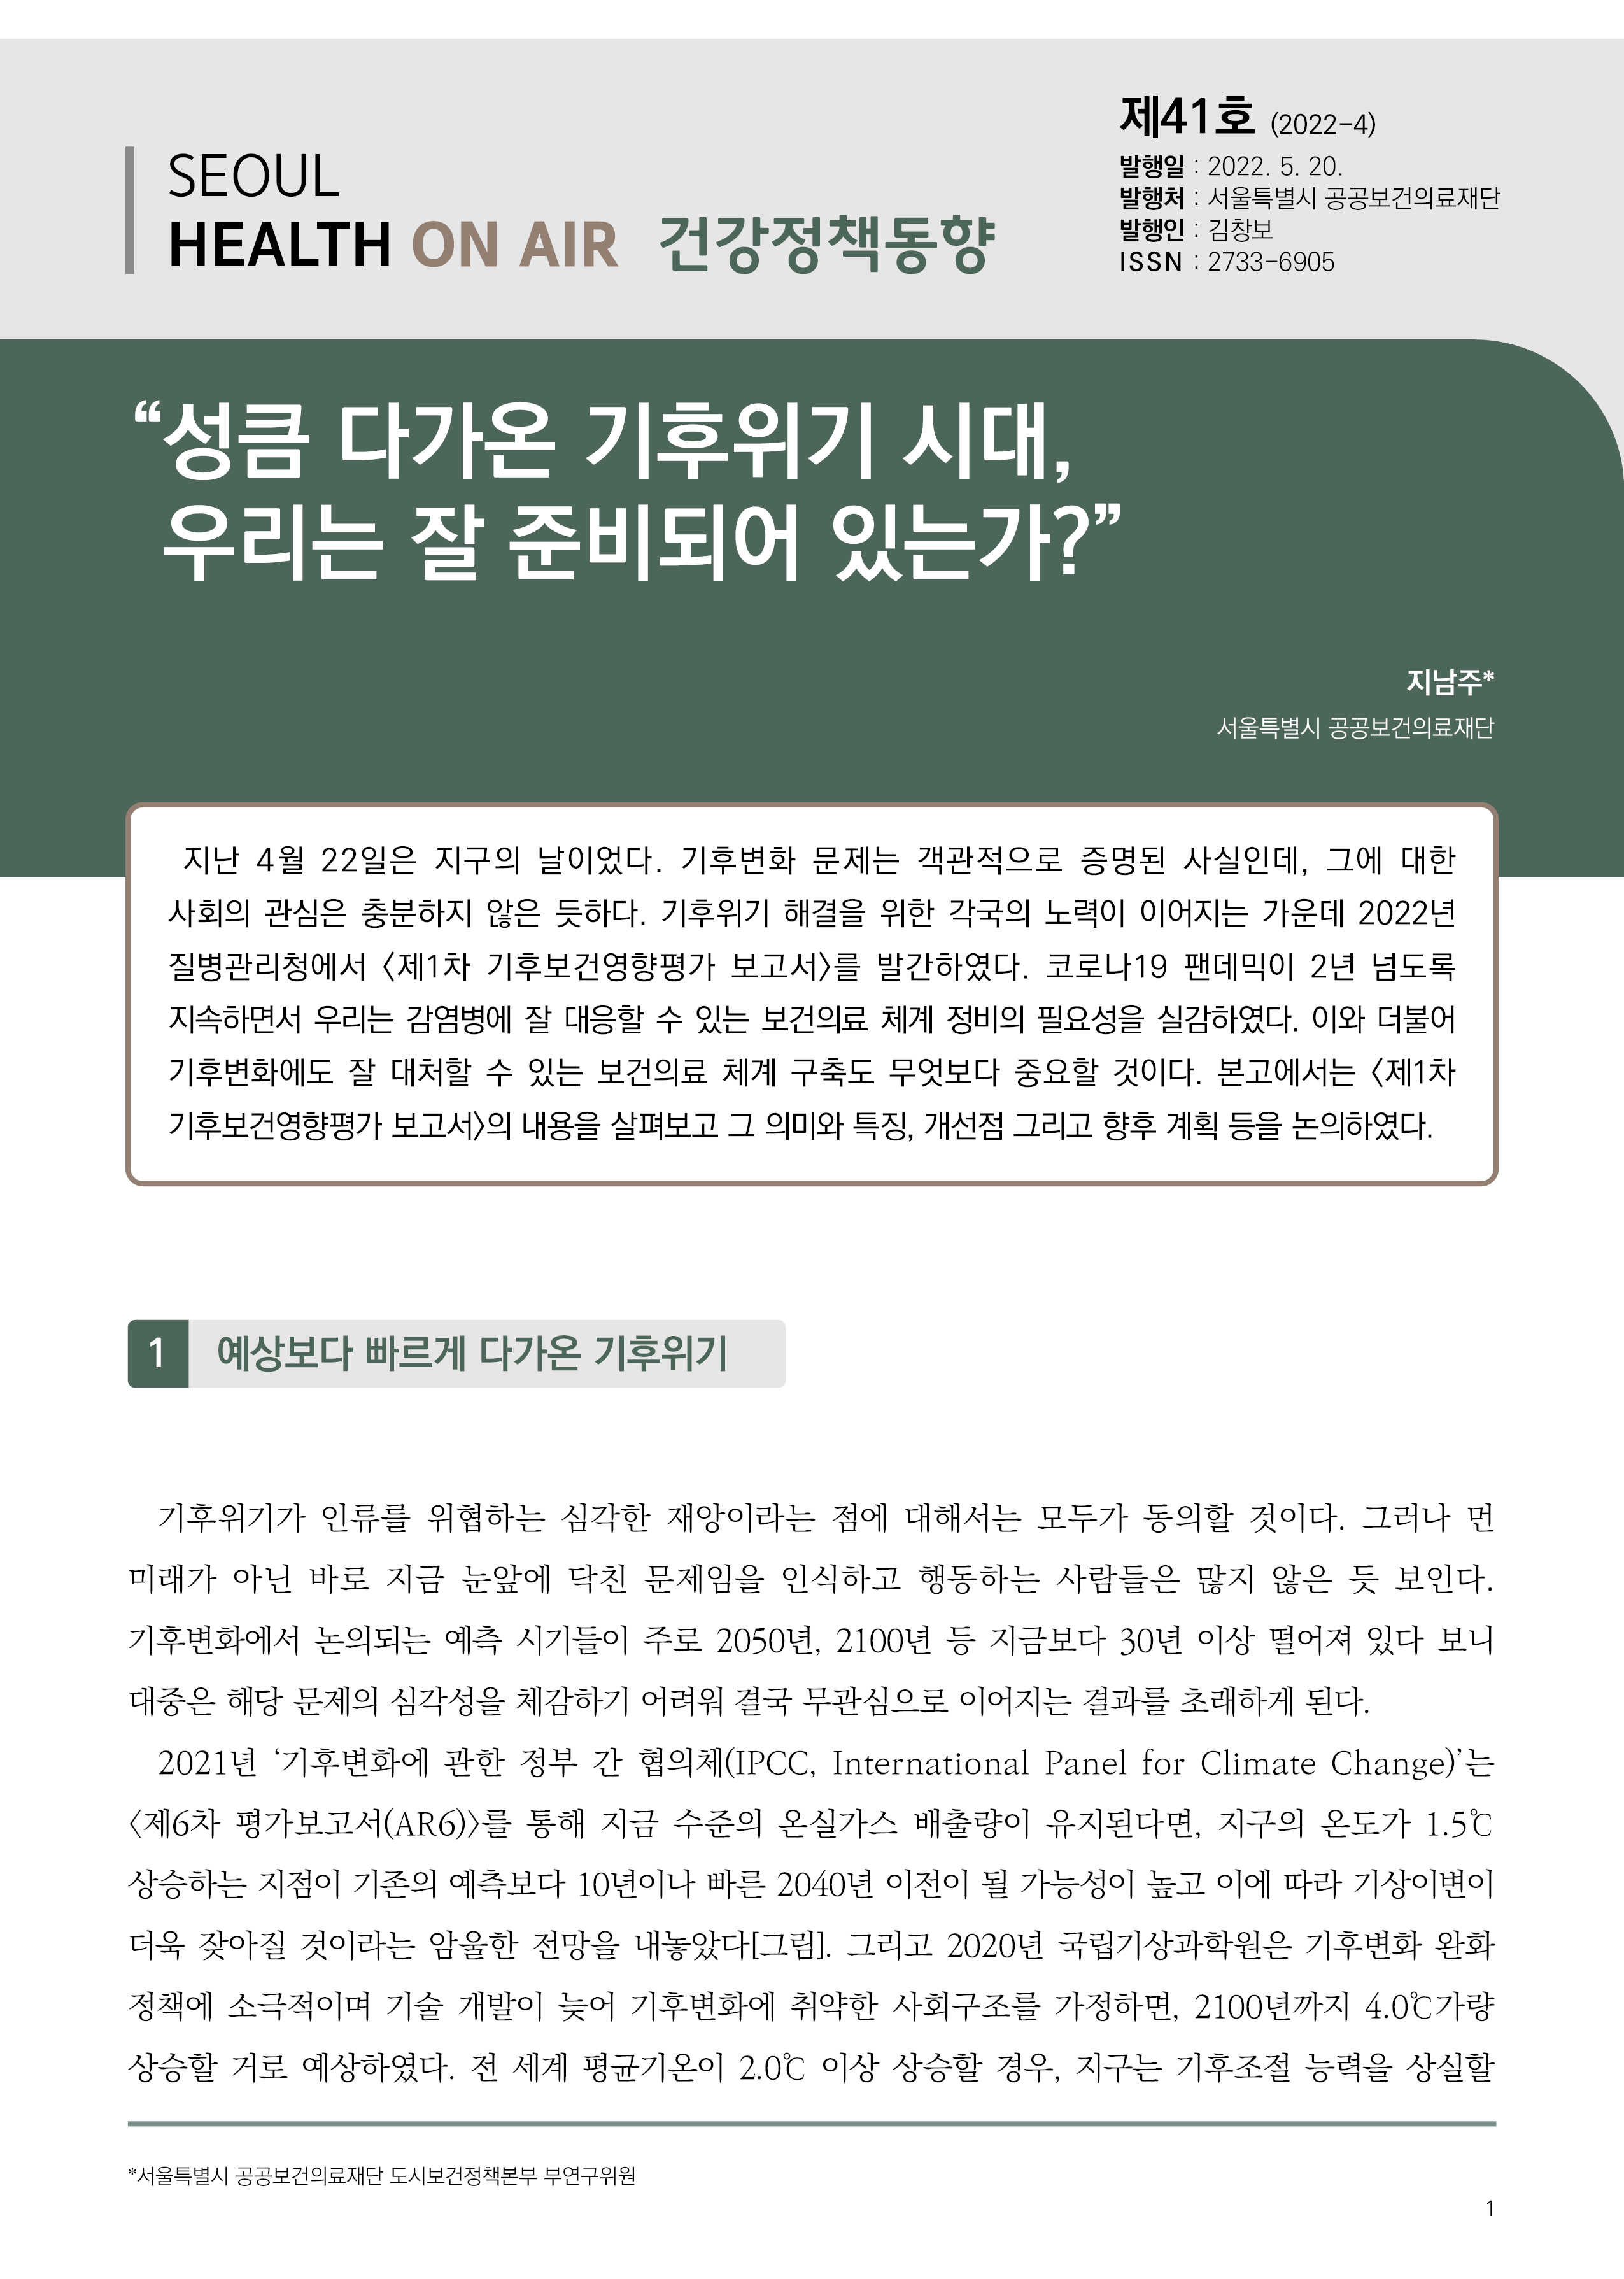 성큼 다가온 기후위기 시대, 우리는 잘 준비되어 있는가? (건강정책동향 Vol.41) Seoul Health On-Air